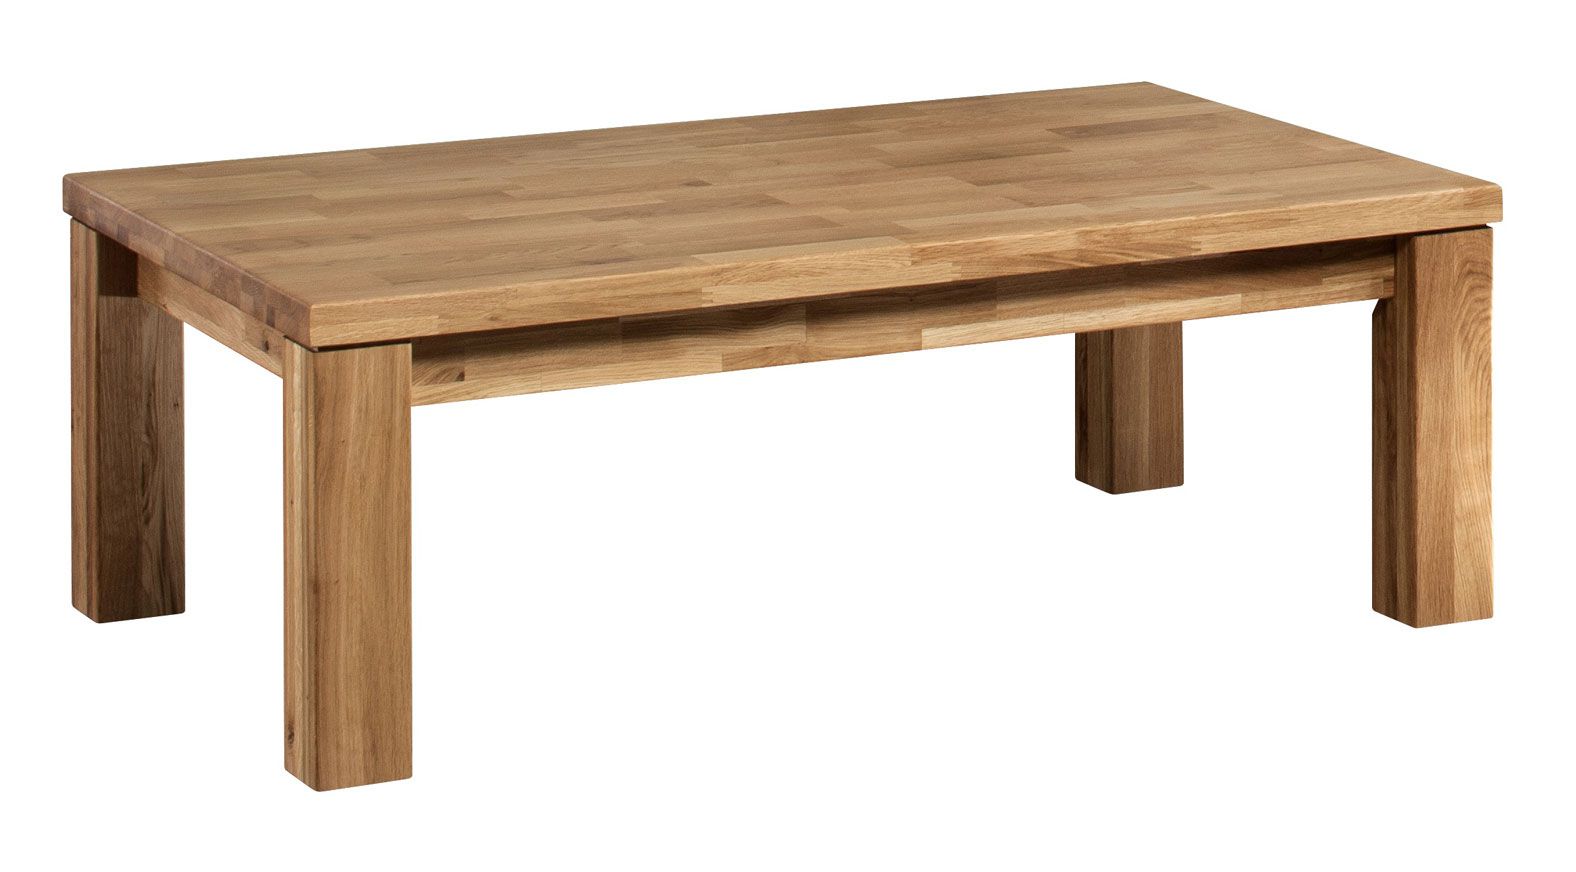 Table basse en chêne massif Floresta 02, avec veines, naturelle, huilée / cirée, 120 x 75 x 44 cm, pour le salon, design moderne et simple